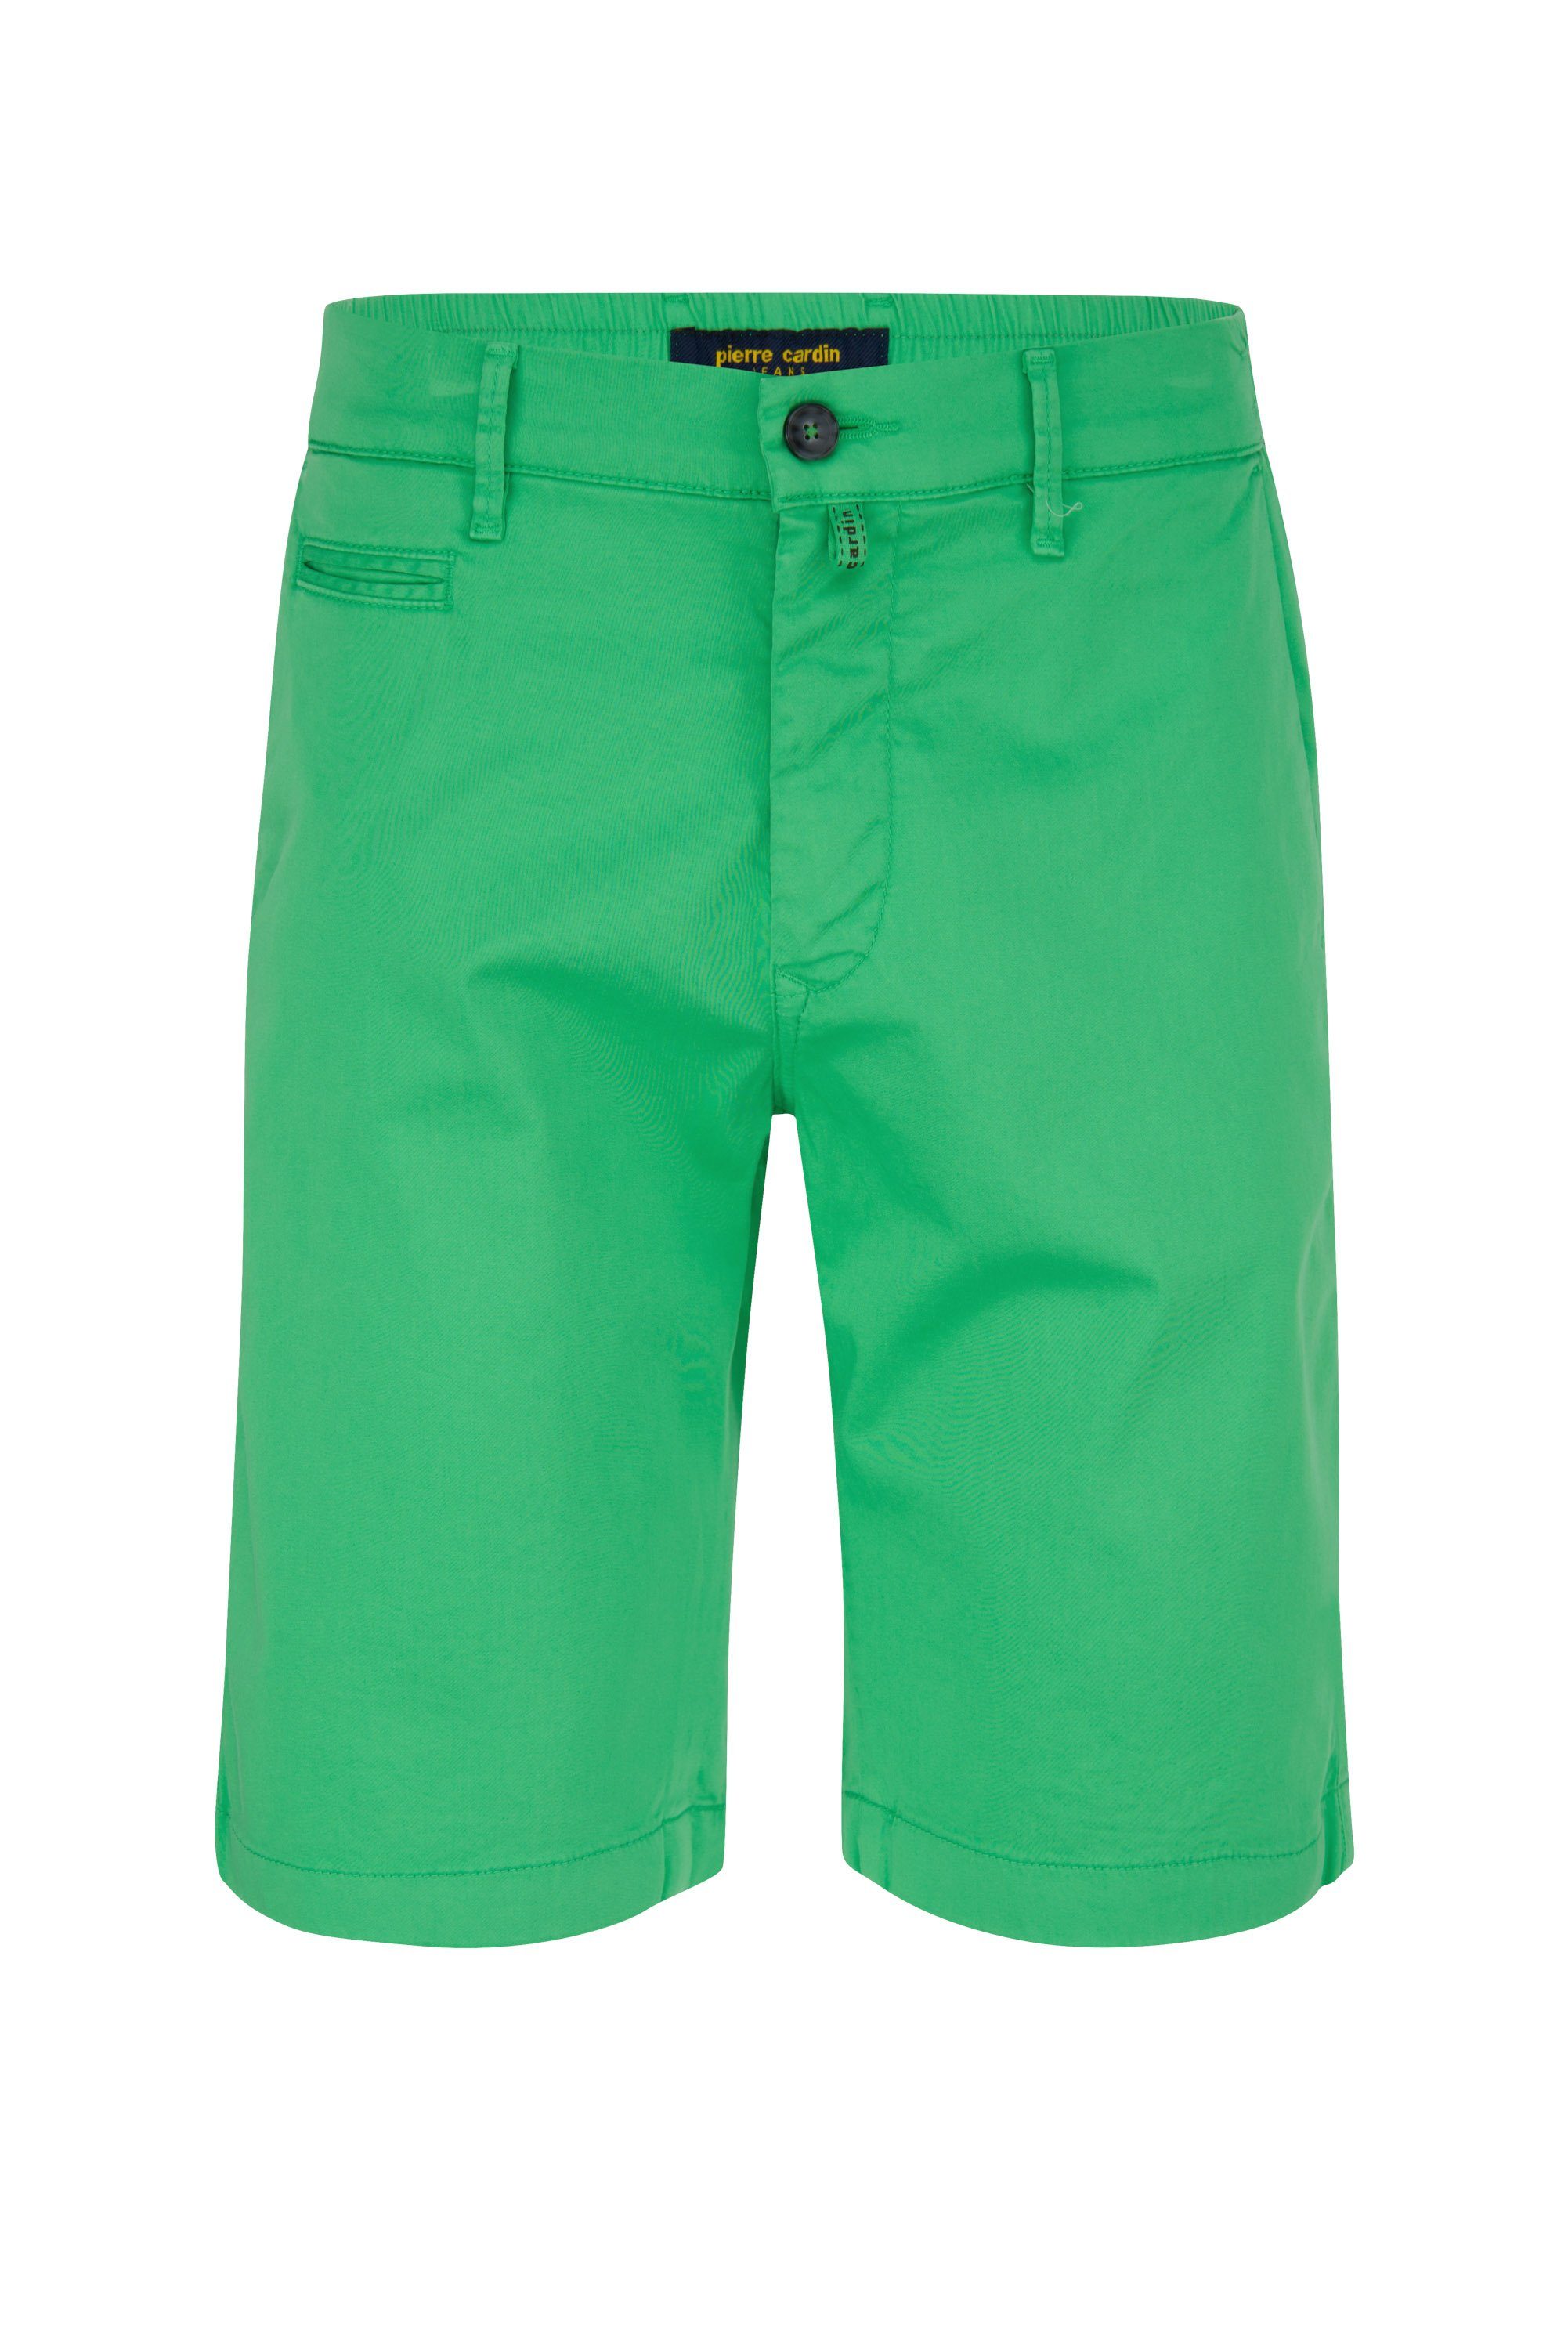 Pierre Cardin 5-Pocket-Jeans PIERRE CARDIN LYON AIRTOUCH BERMUDA green 3477 2080.75